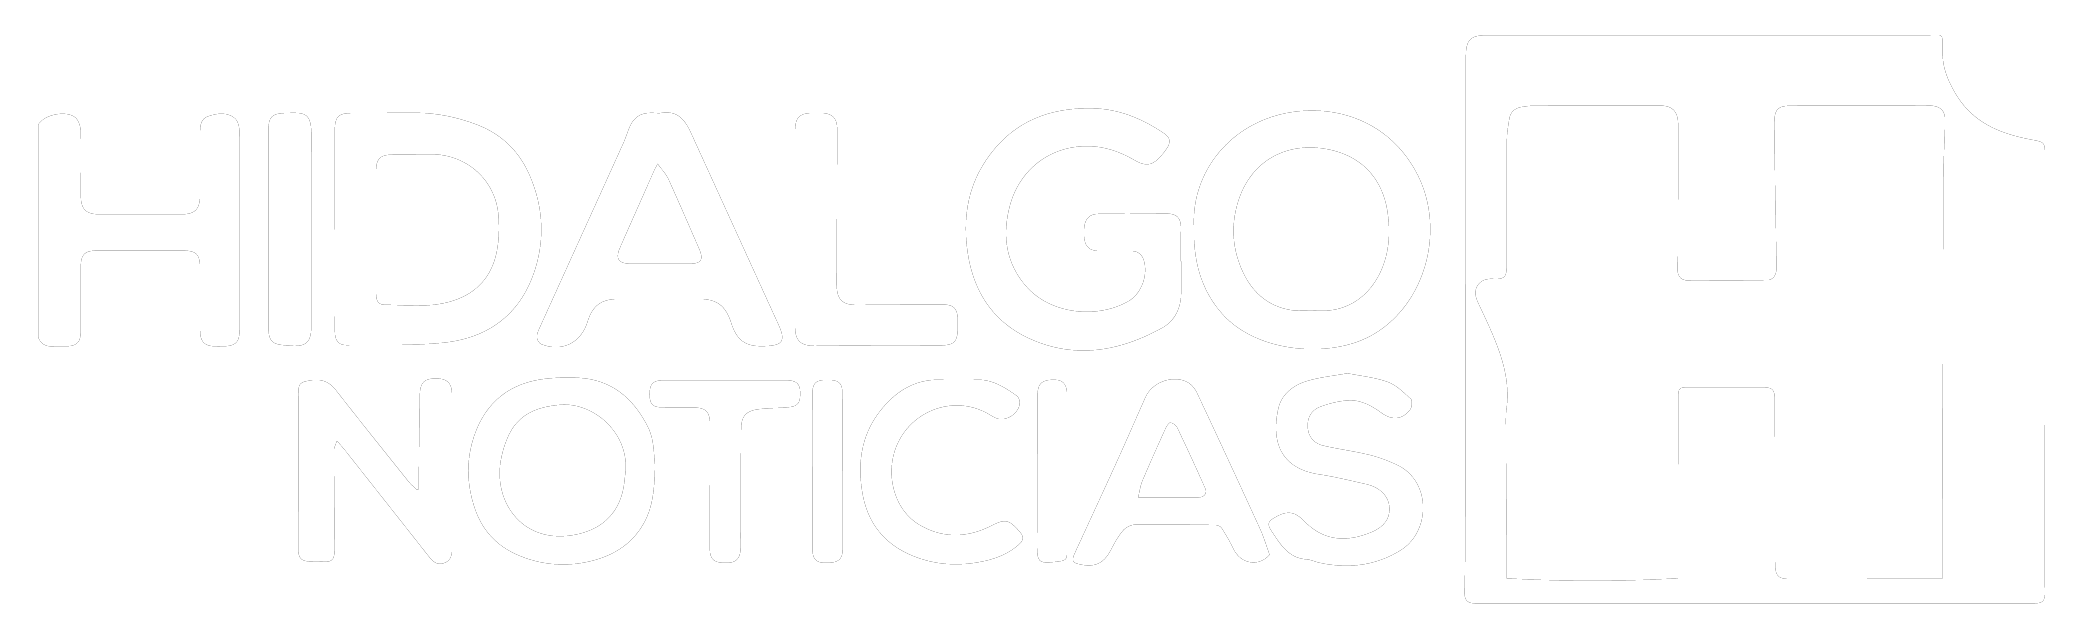 HIDALGO-NOTICIAS.png